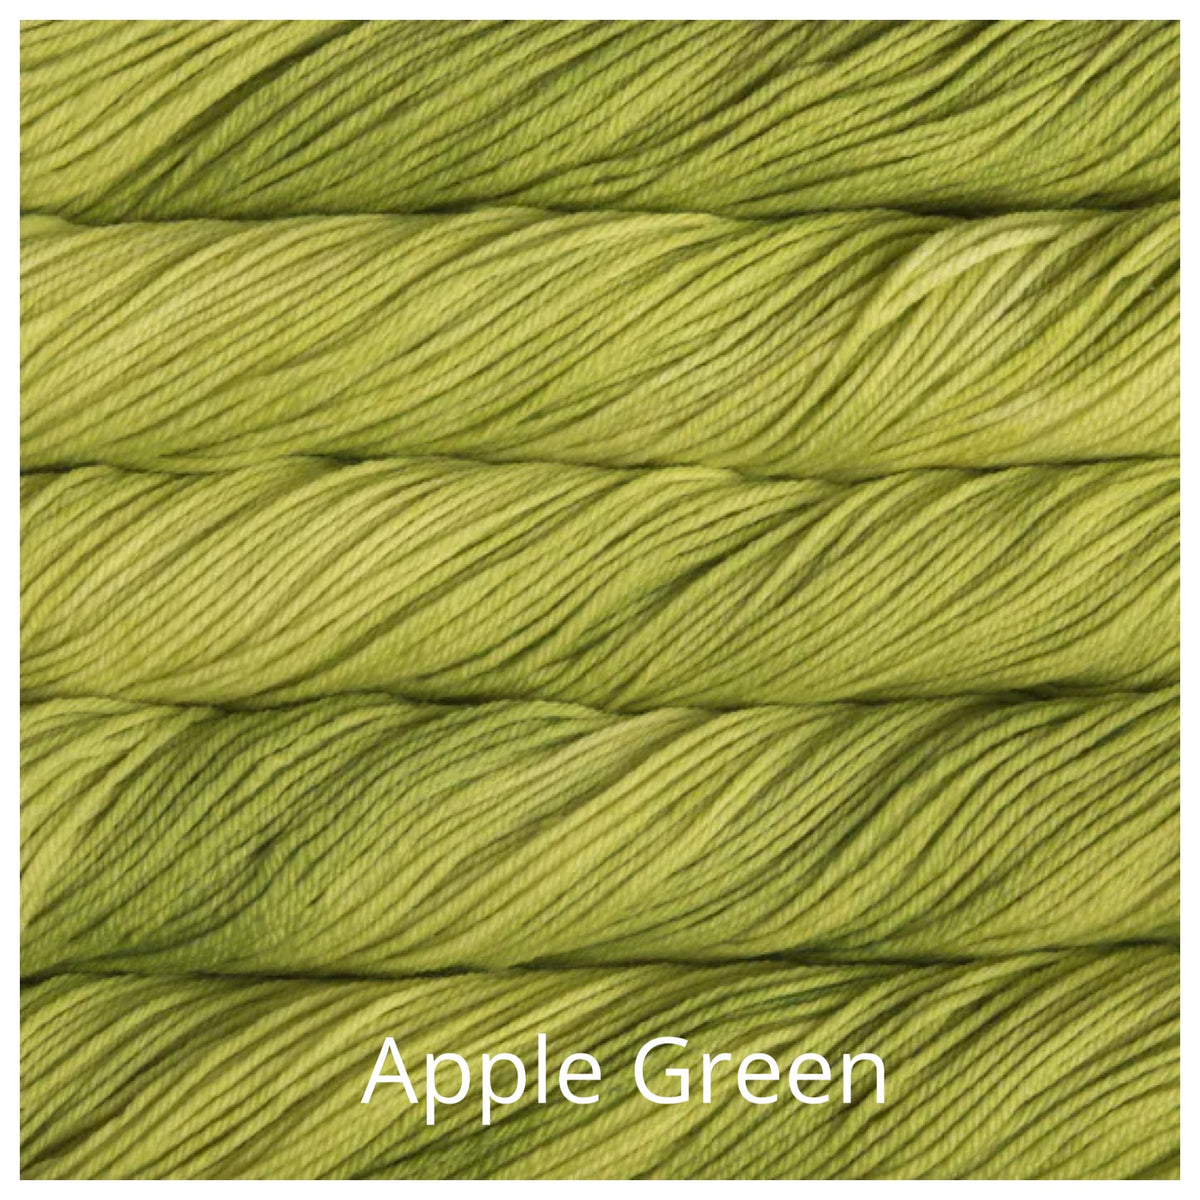 apple green malabrigo rios - Thread Collective Australia